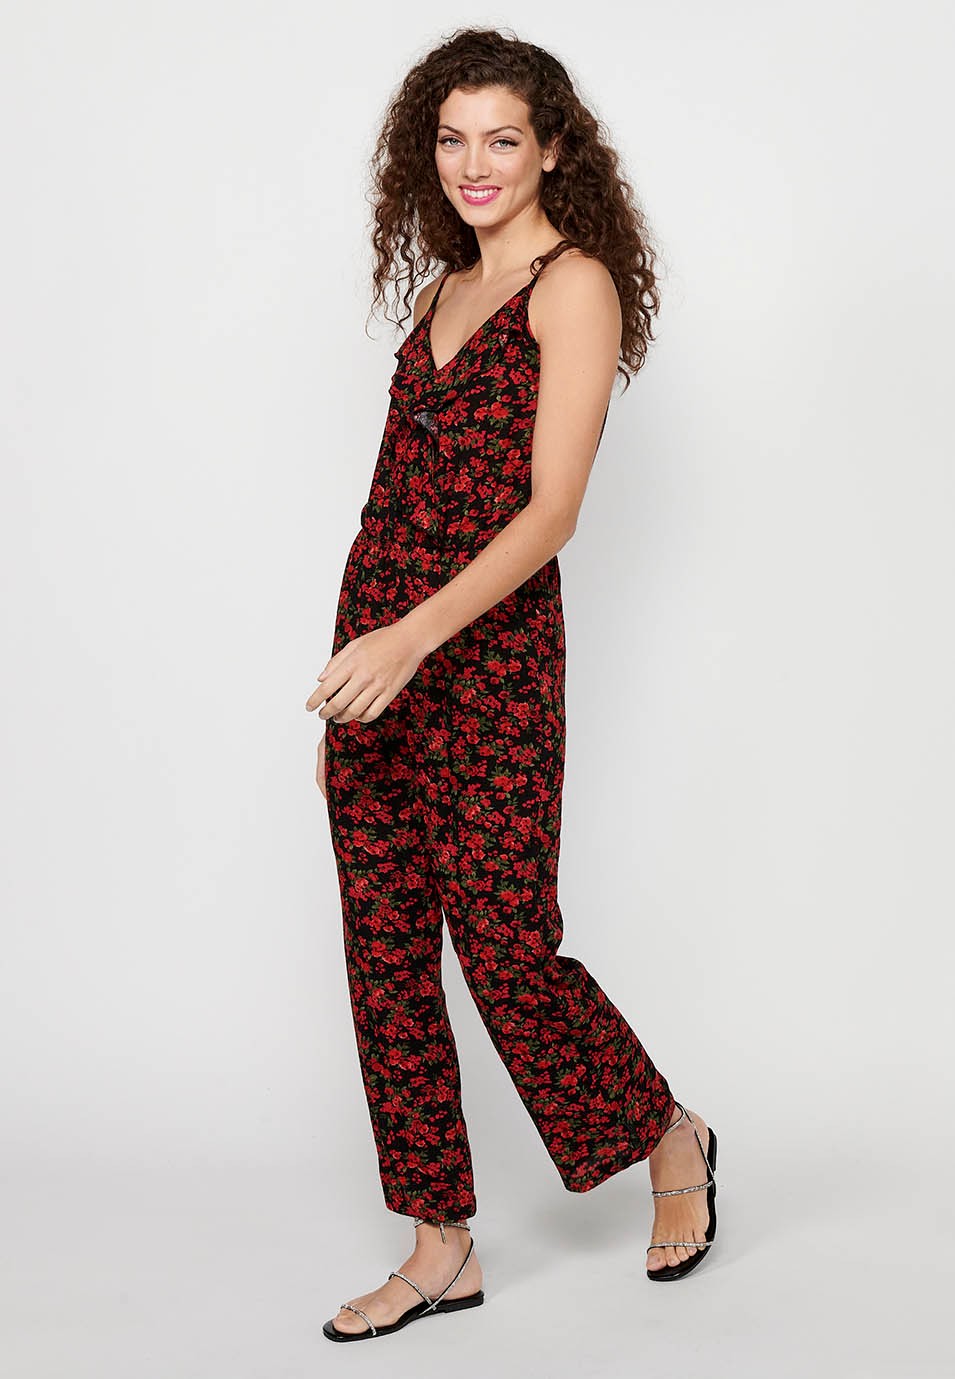 Pantalon habillé long à bretelles réglables avec taille caoutchoutée et imprimé floral rouge pour Femme 4